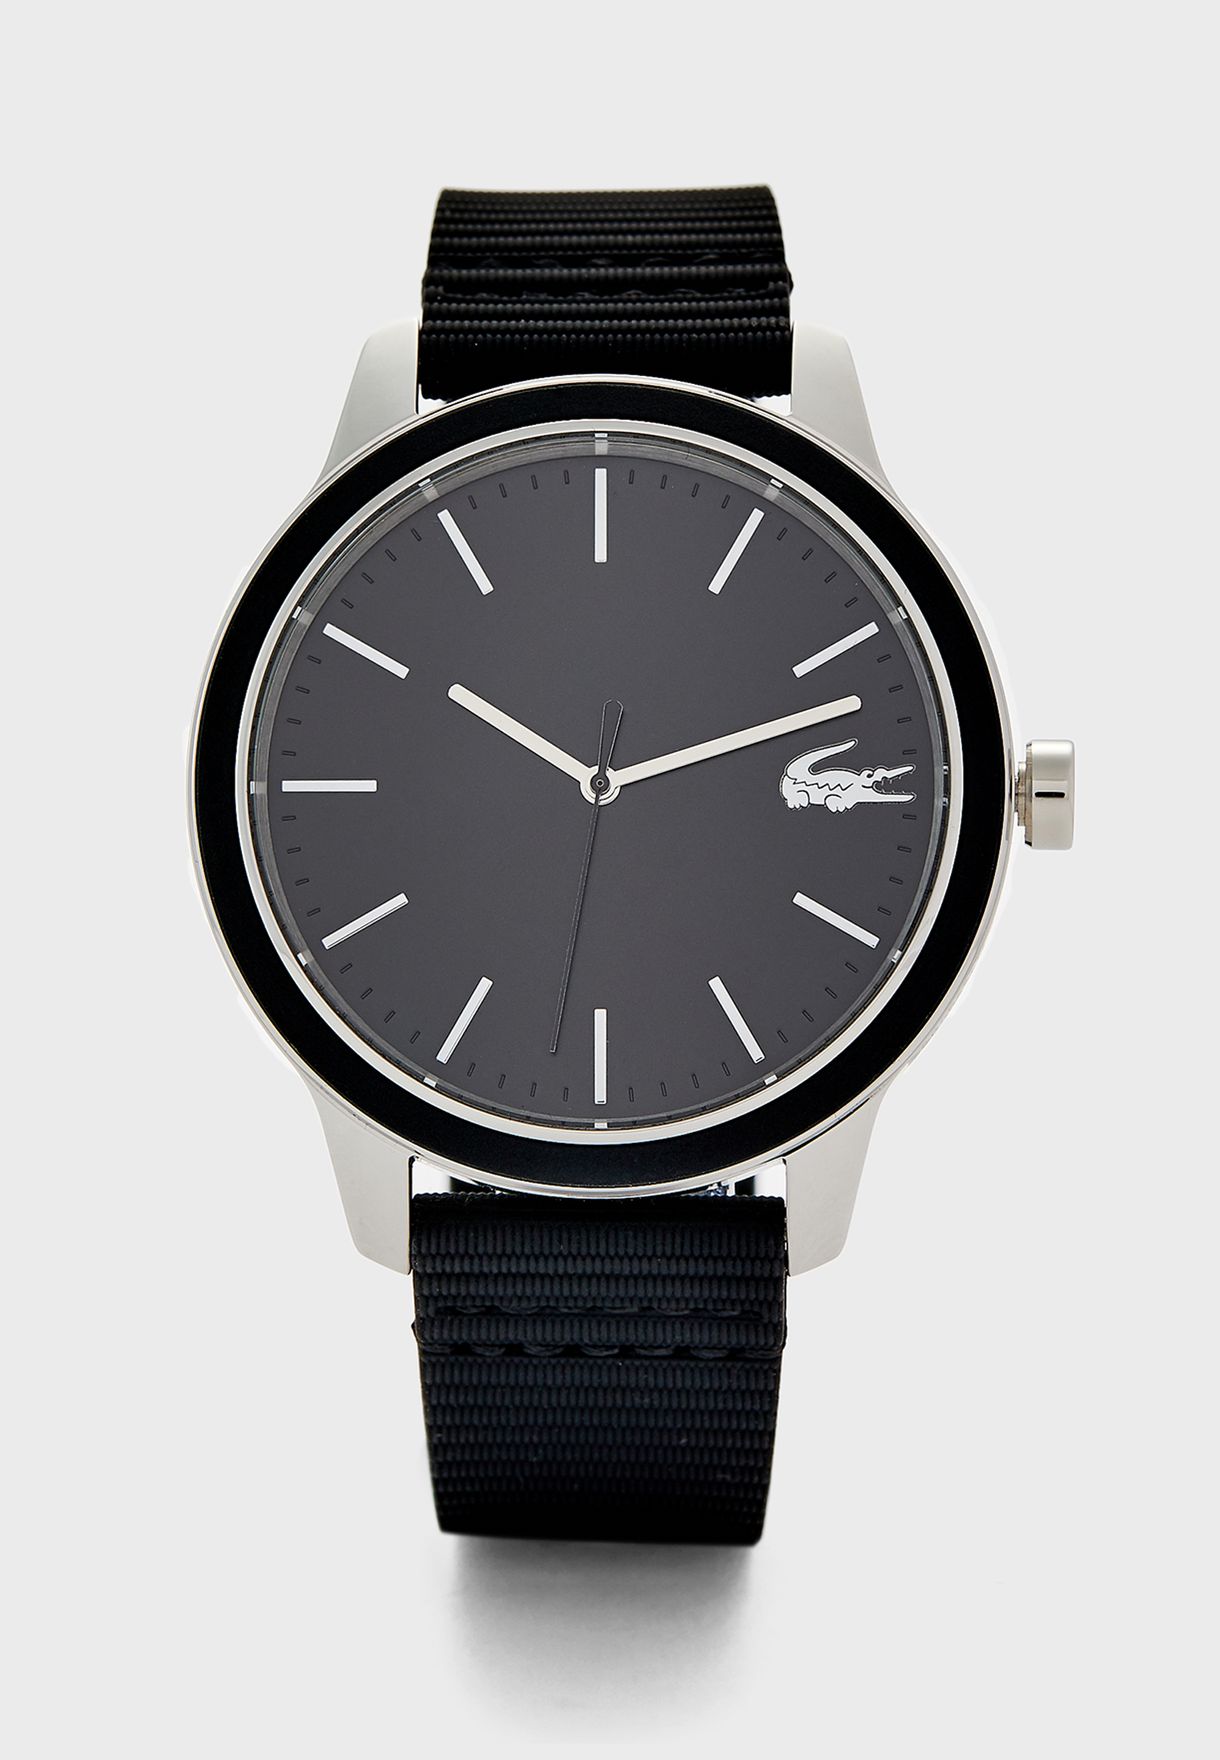 lacoste black watch 12.12